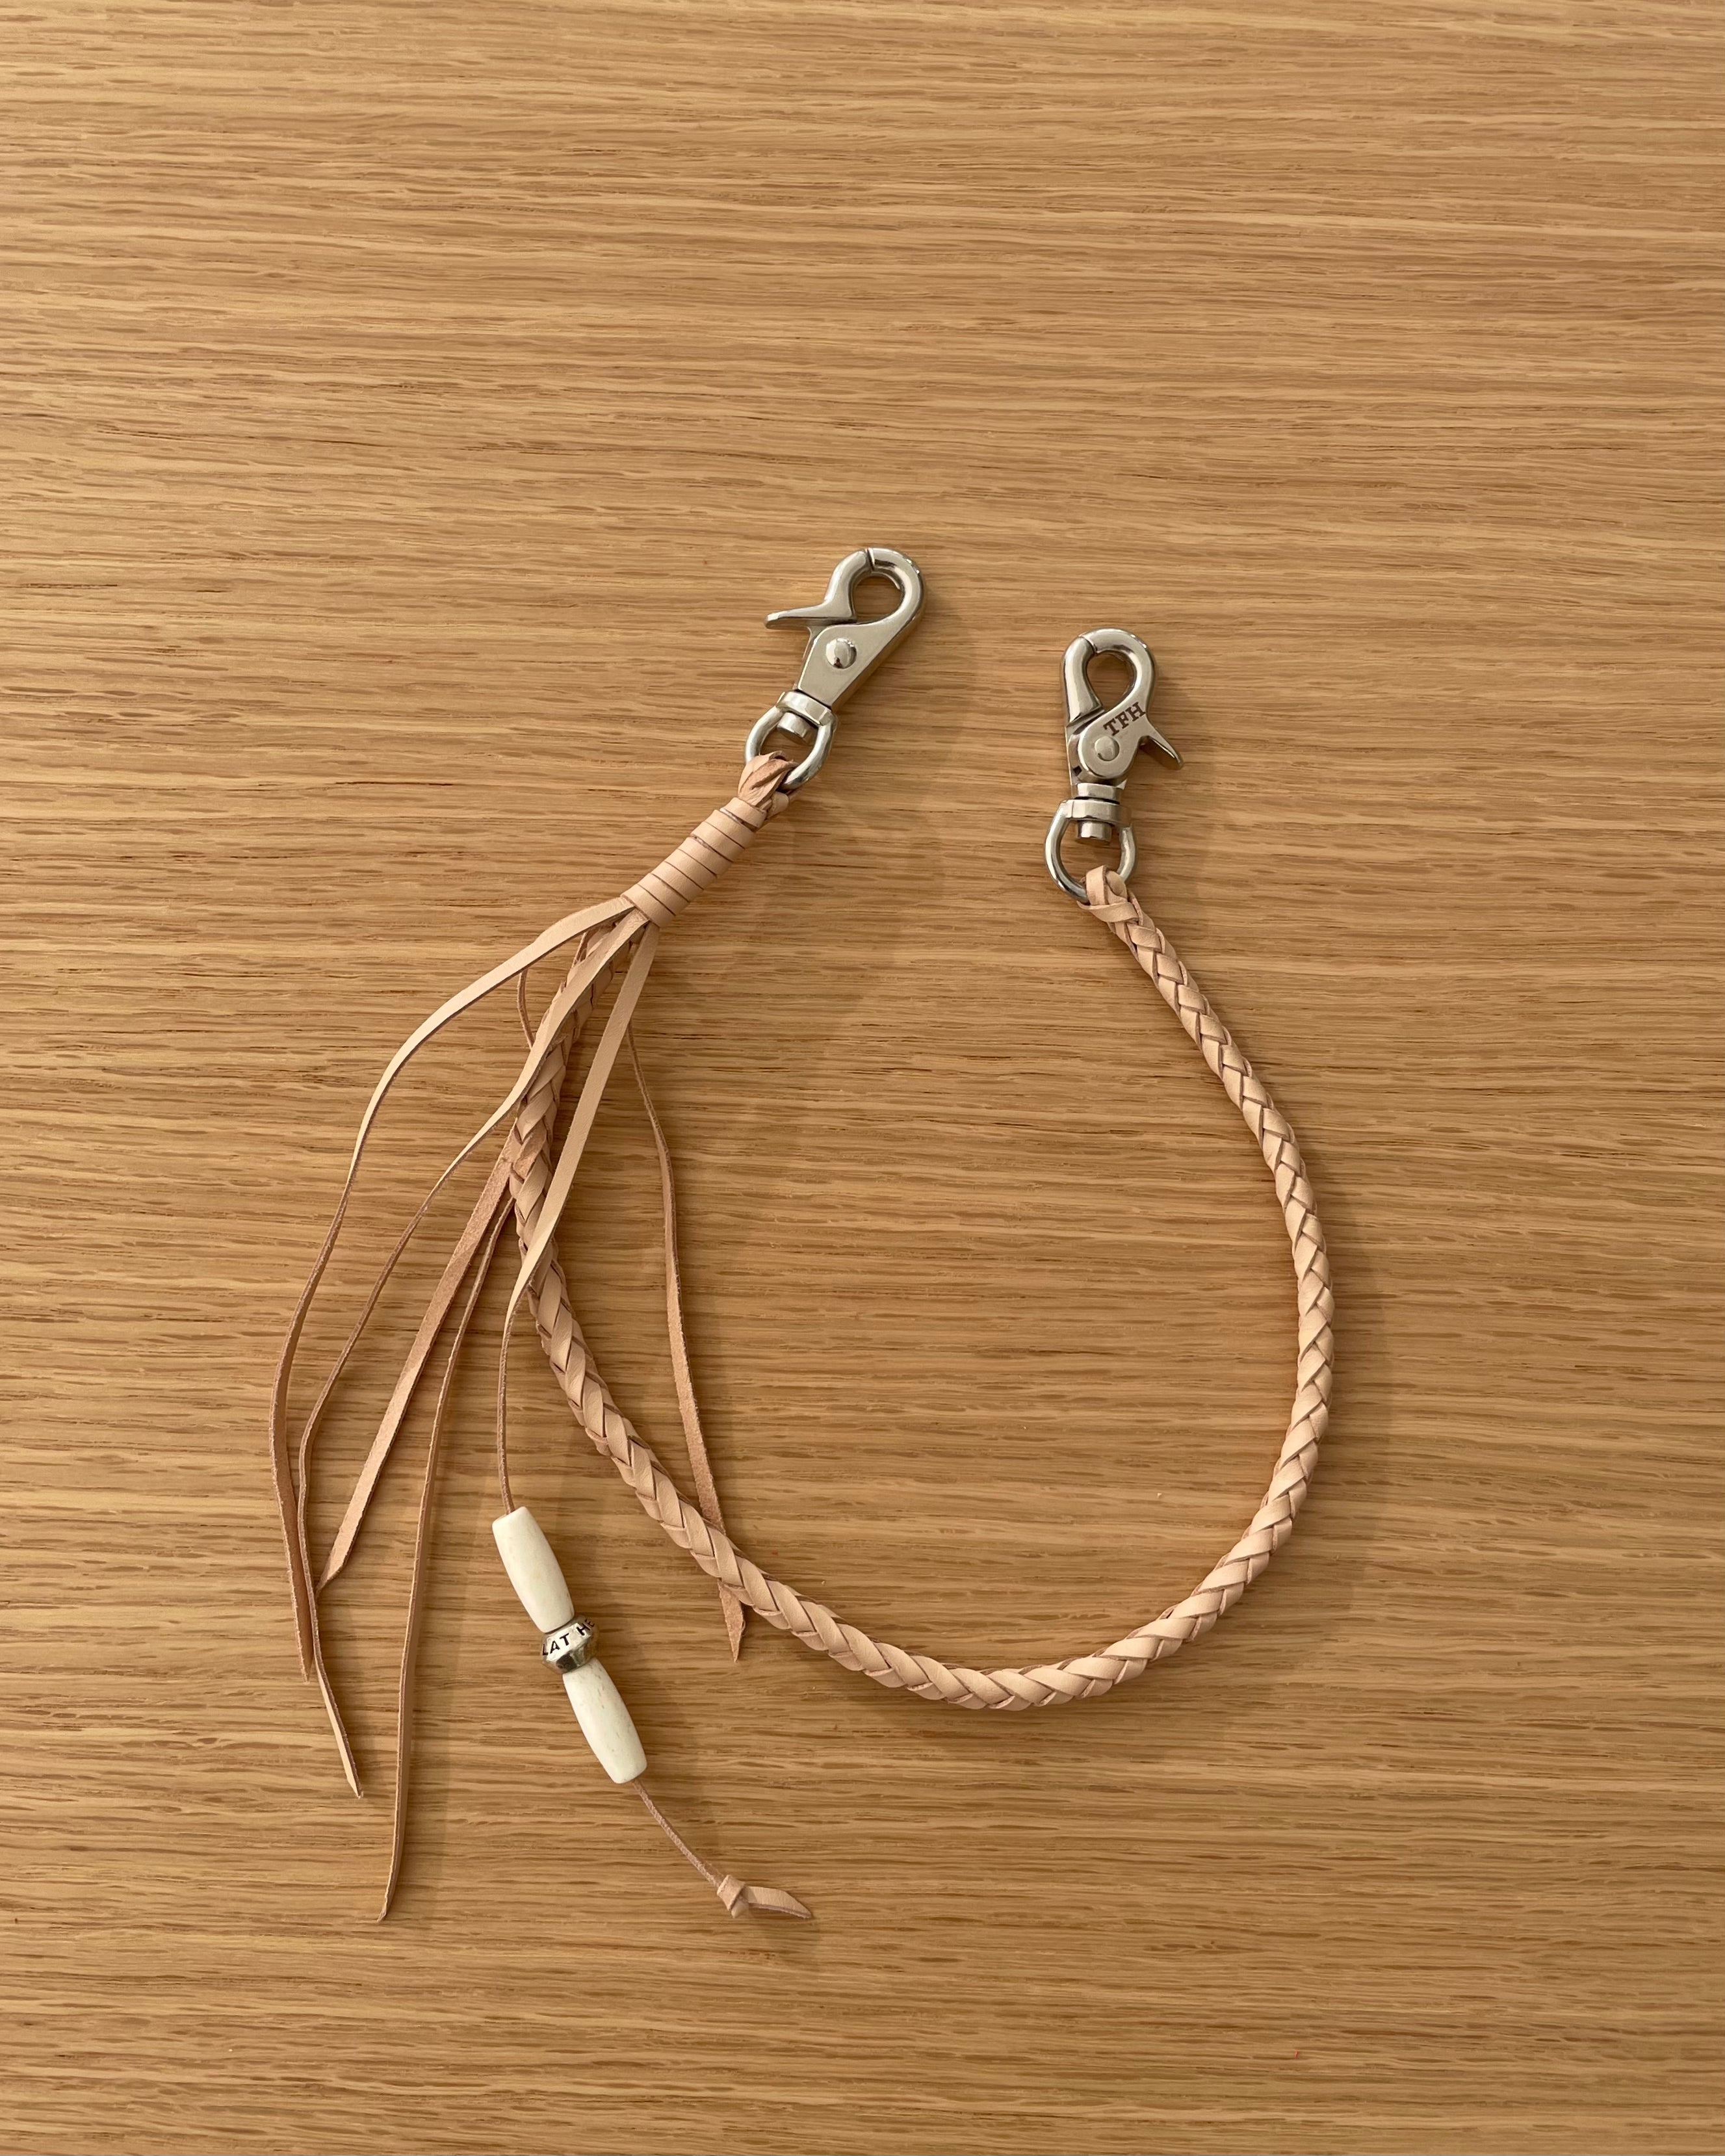 6-Knit Wallet Rope in Tan FN-AR1-92